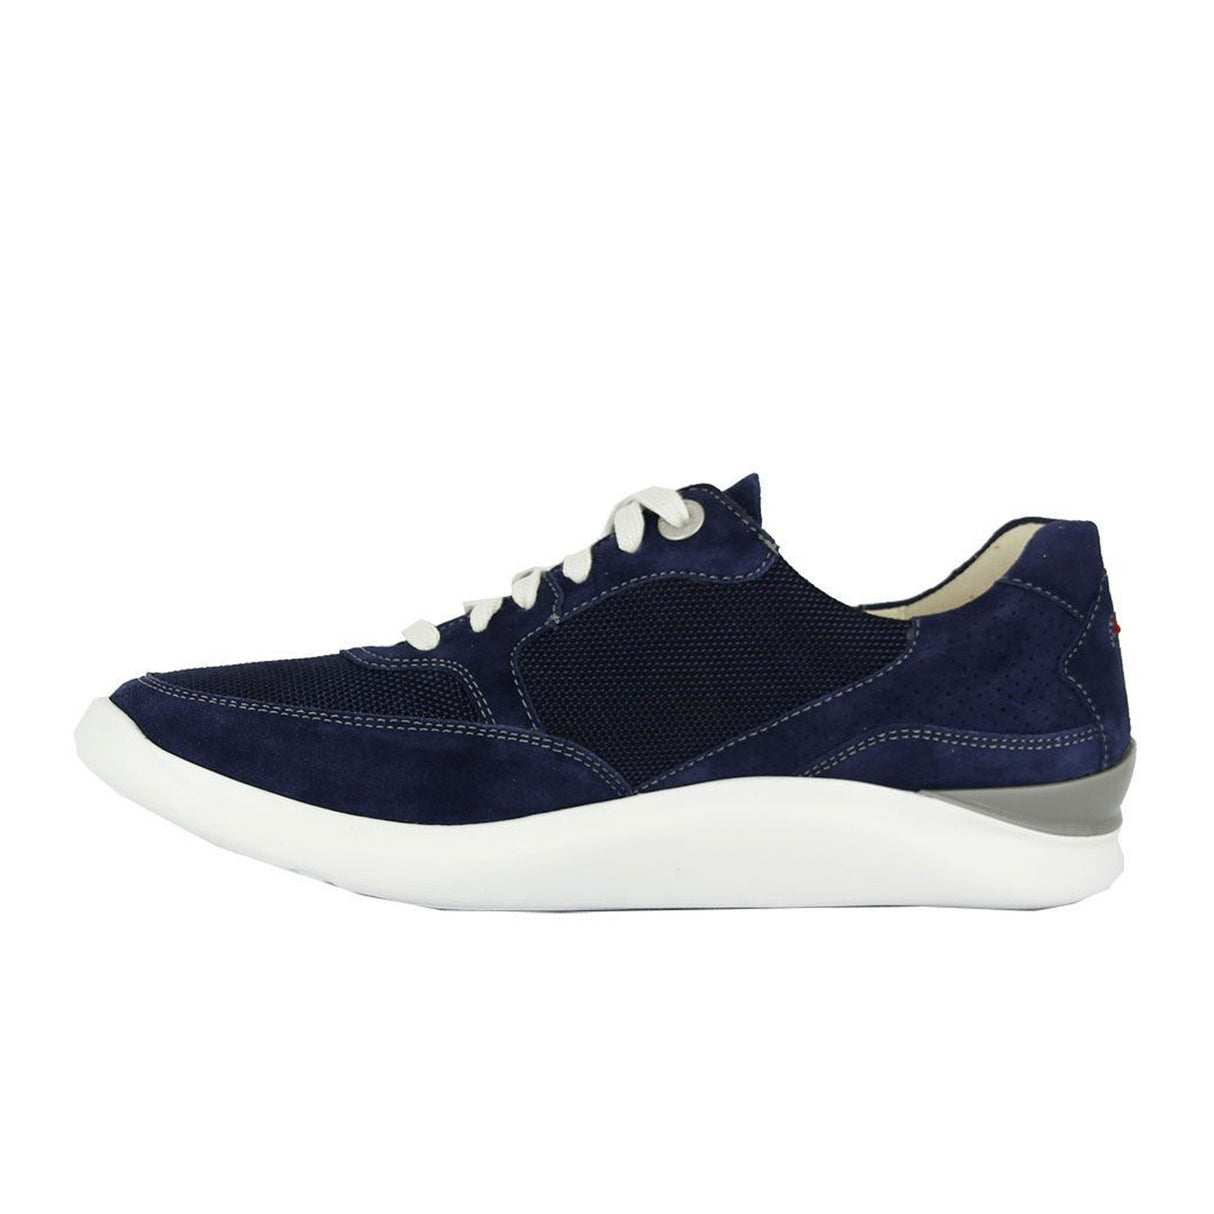 Ganter Helen 3-201512 Sneaker (Women) - Navy Dress-Casual - Sneakers - The Heel Shoe Fitters